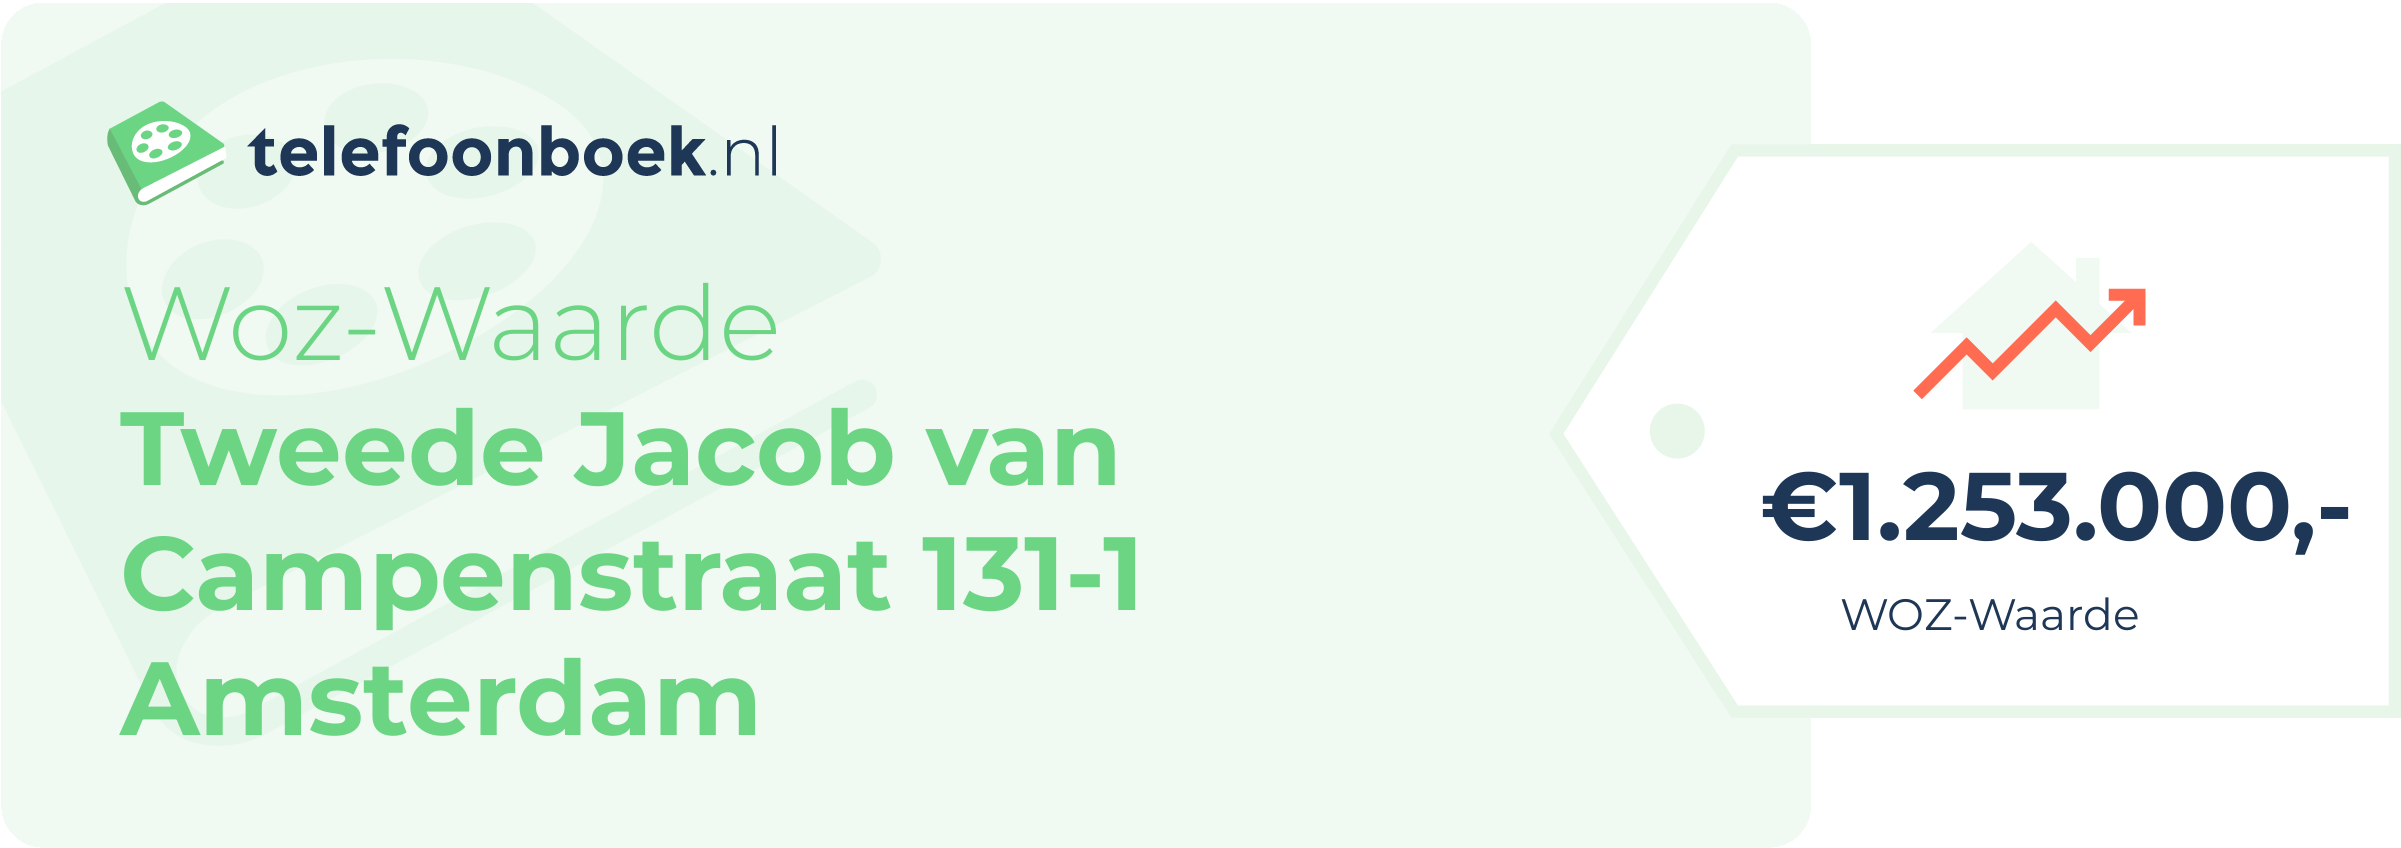 WOZ-waarde Tweede Jacob Van Campenstraat 131-1 Amsterdam